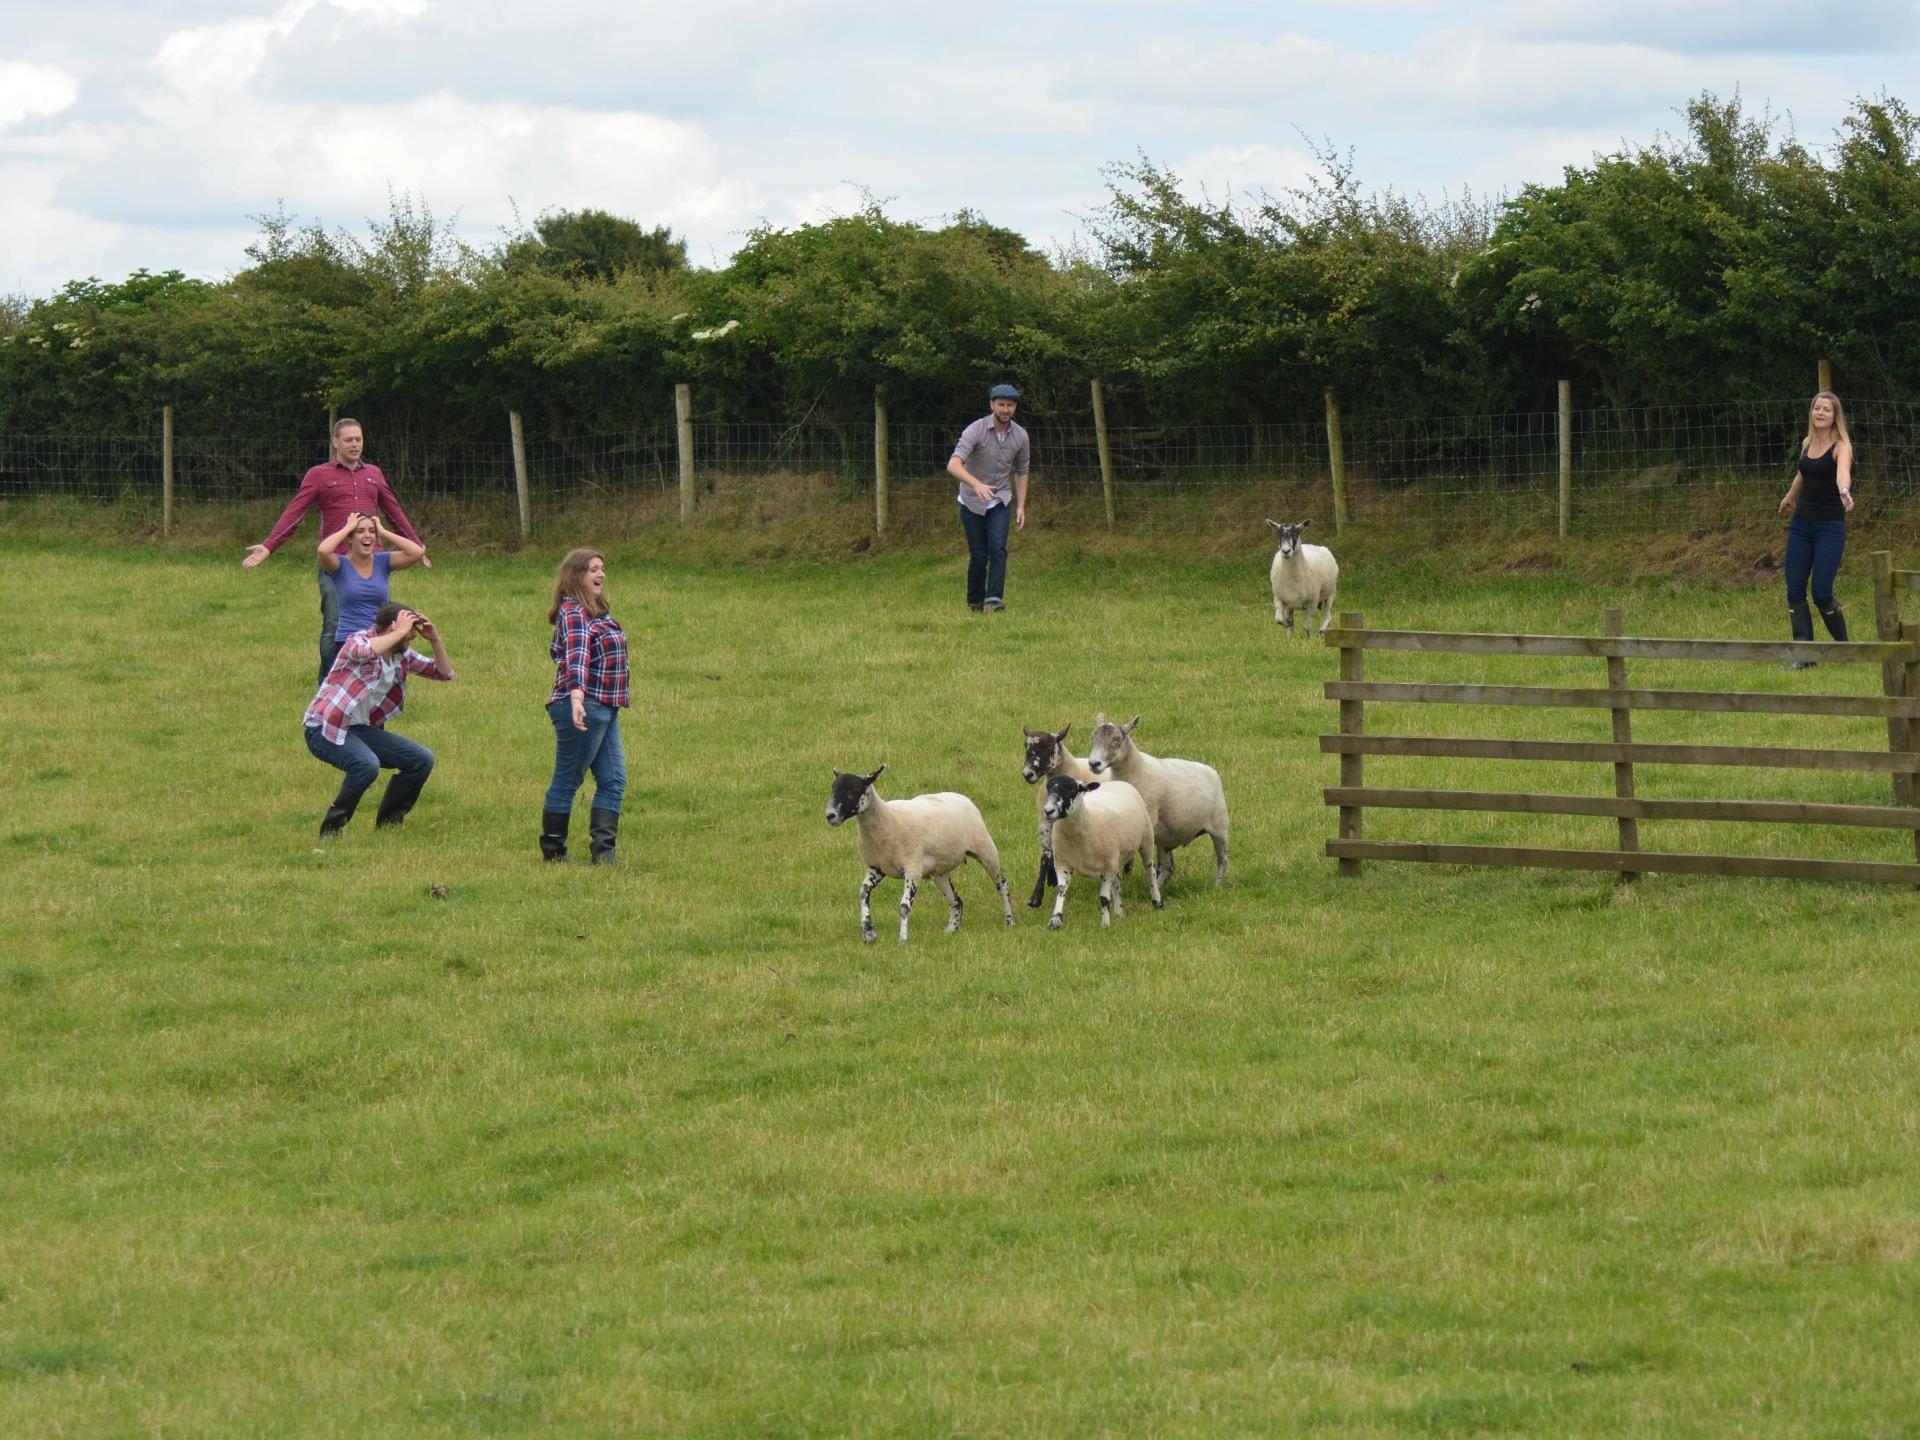 An attempt at Sheep Gathering